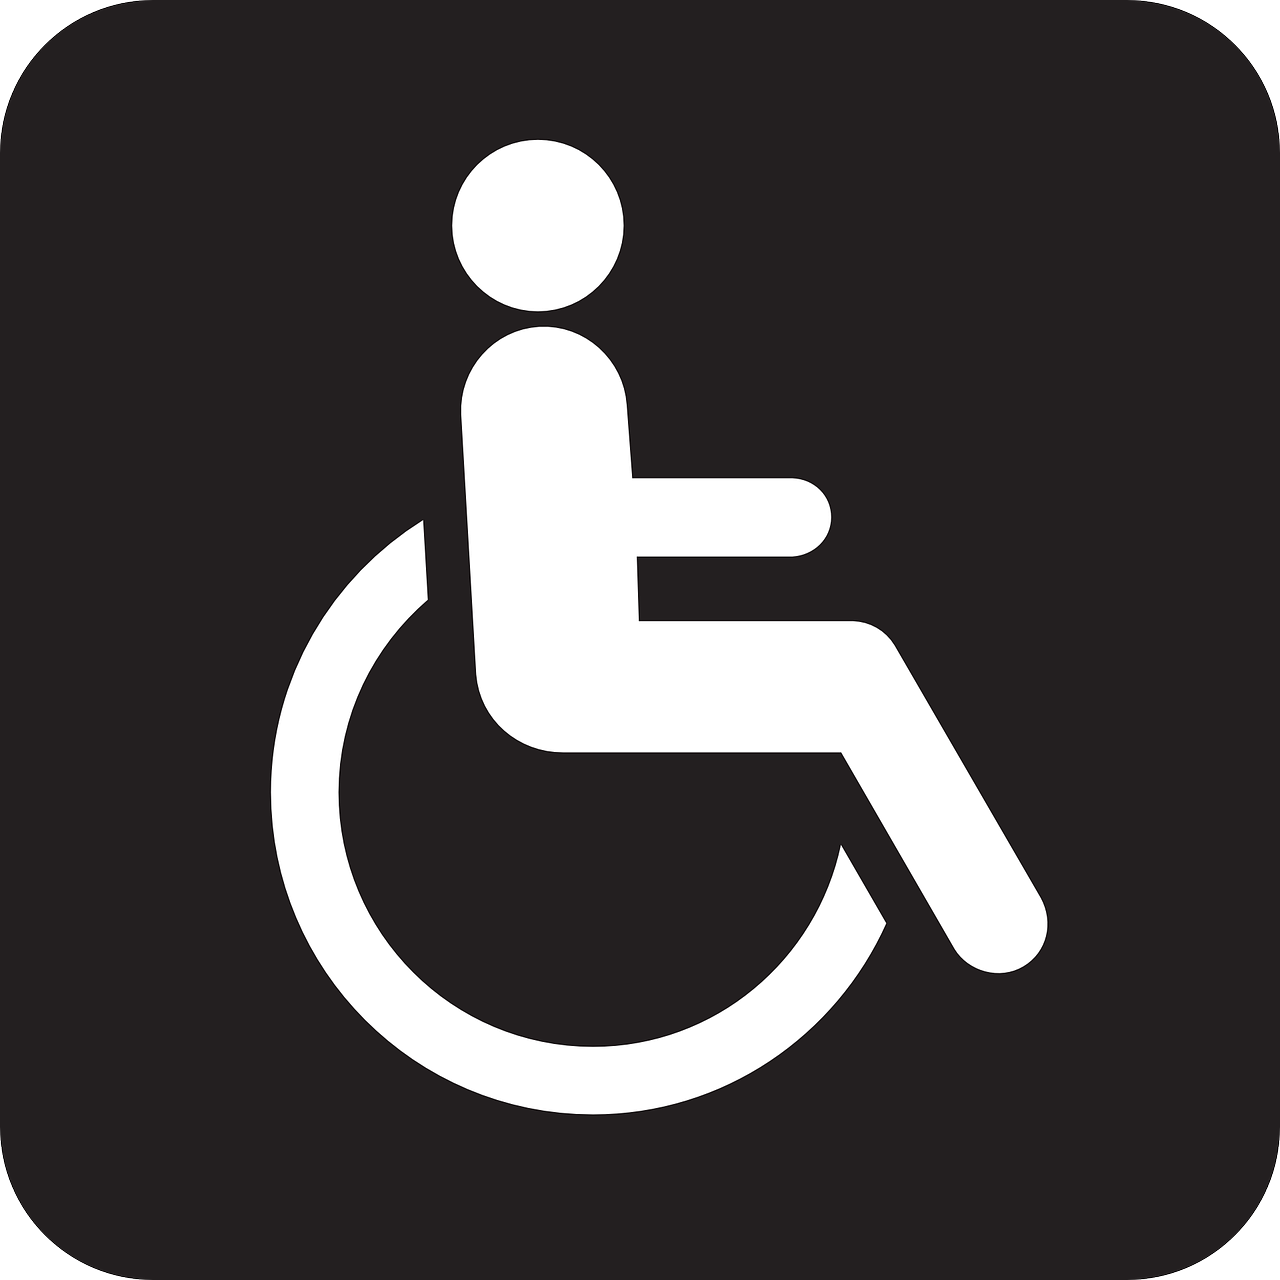 Woonlocatie Fleminghof Gemiva - SVG- Groep beoordelingen instelling gehandicaptenzorg verstandelijk gehandicapten